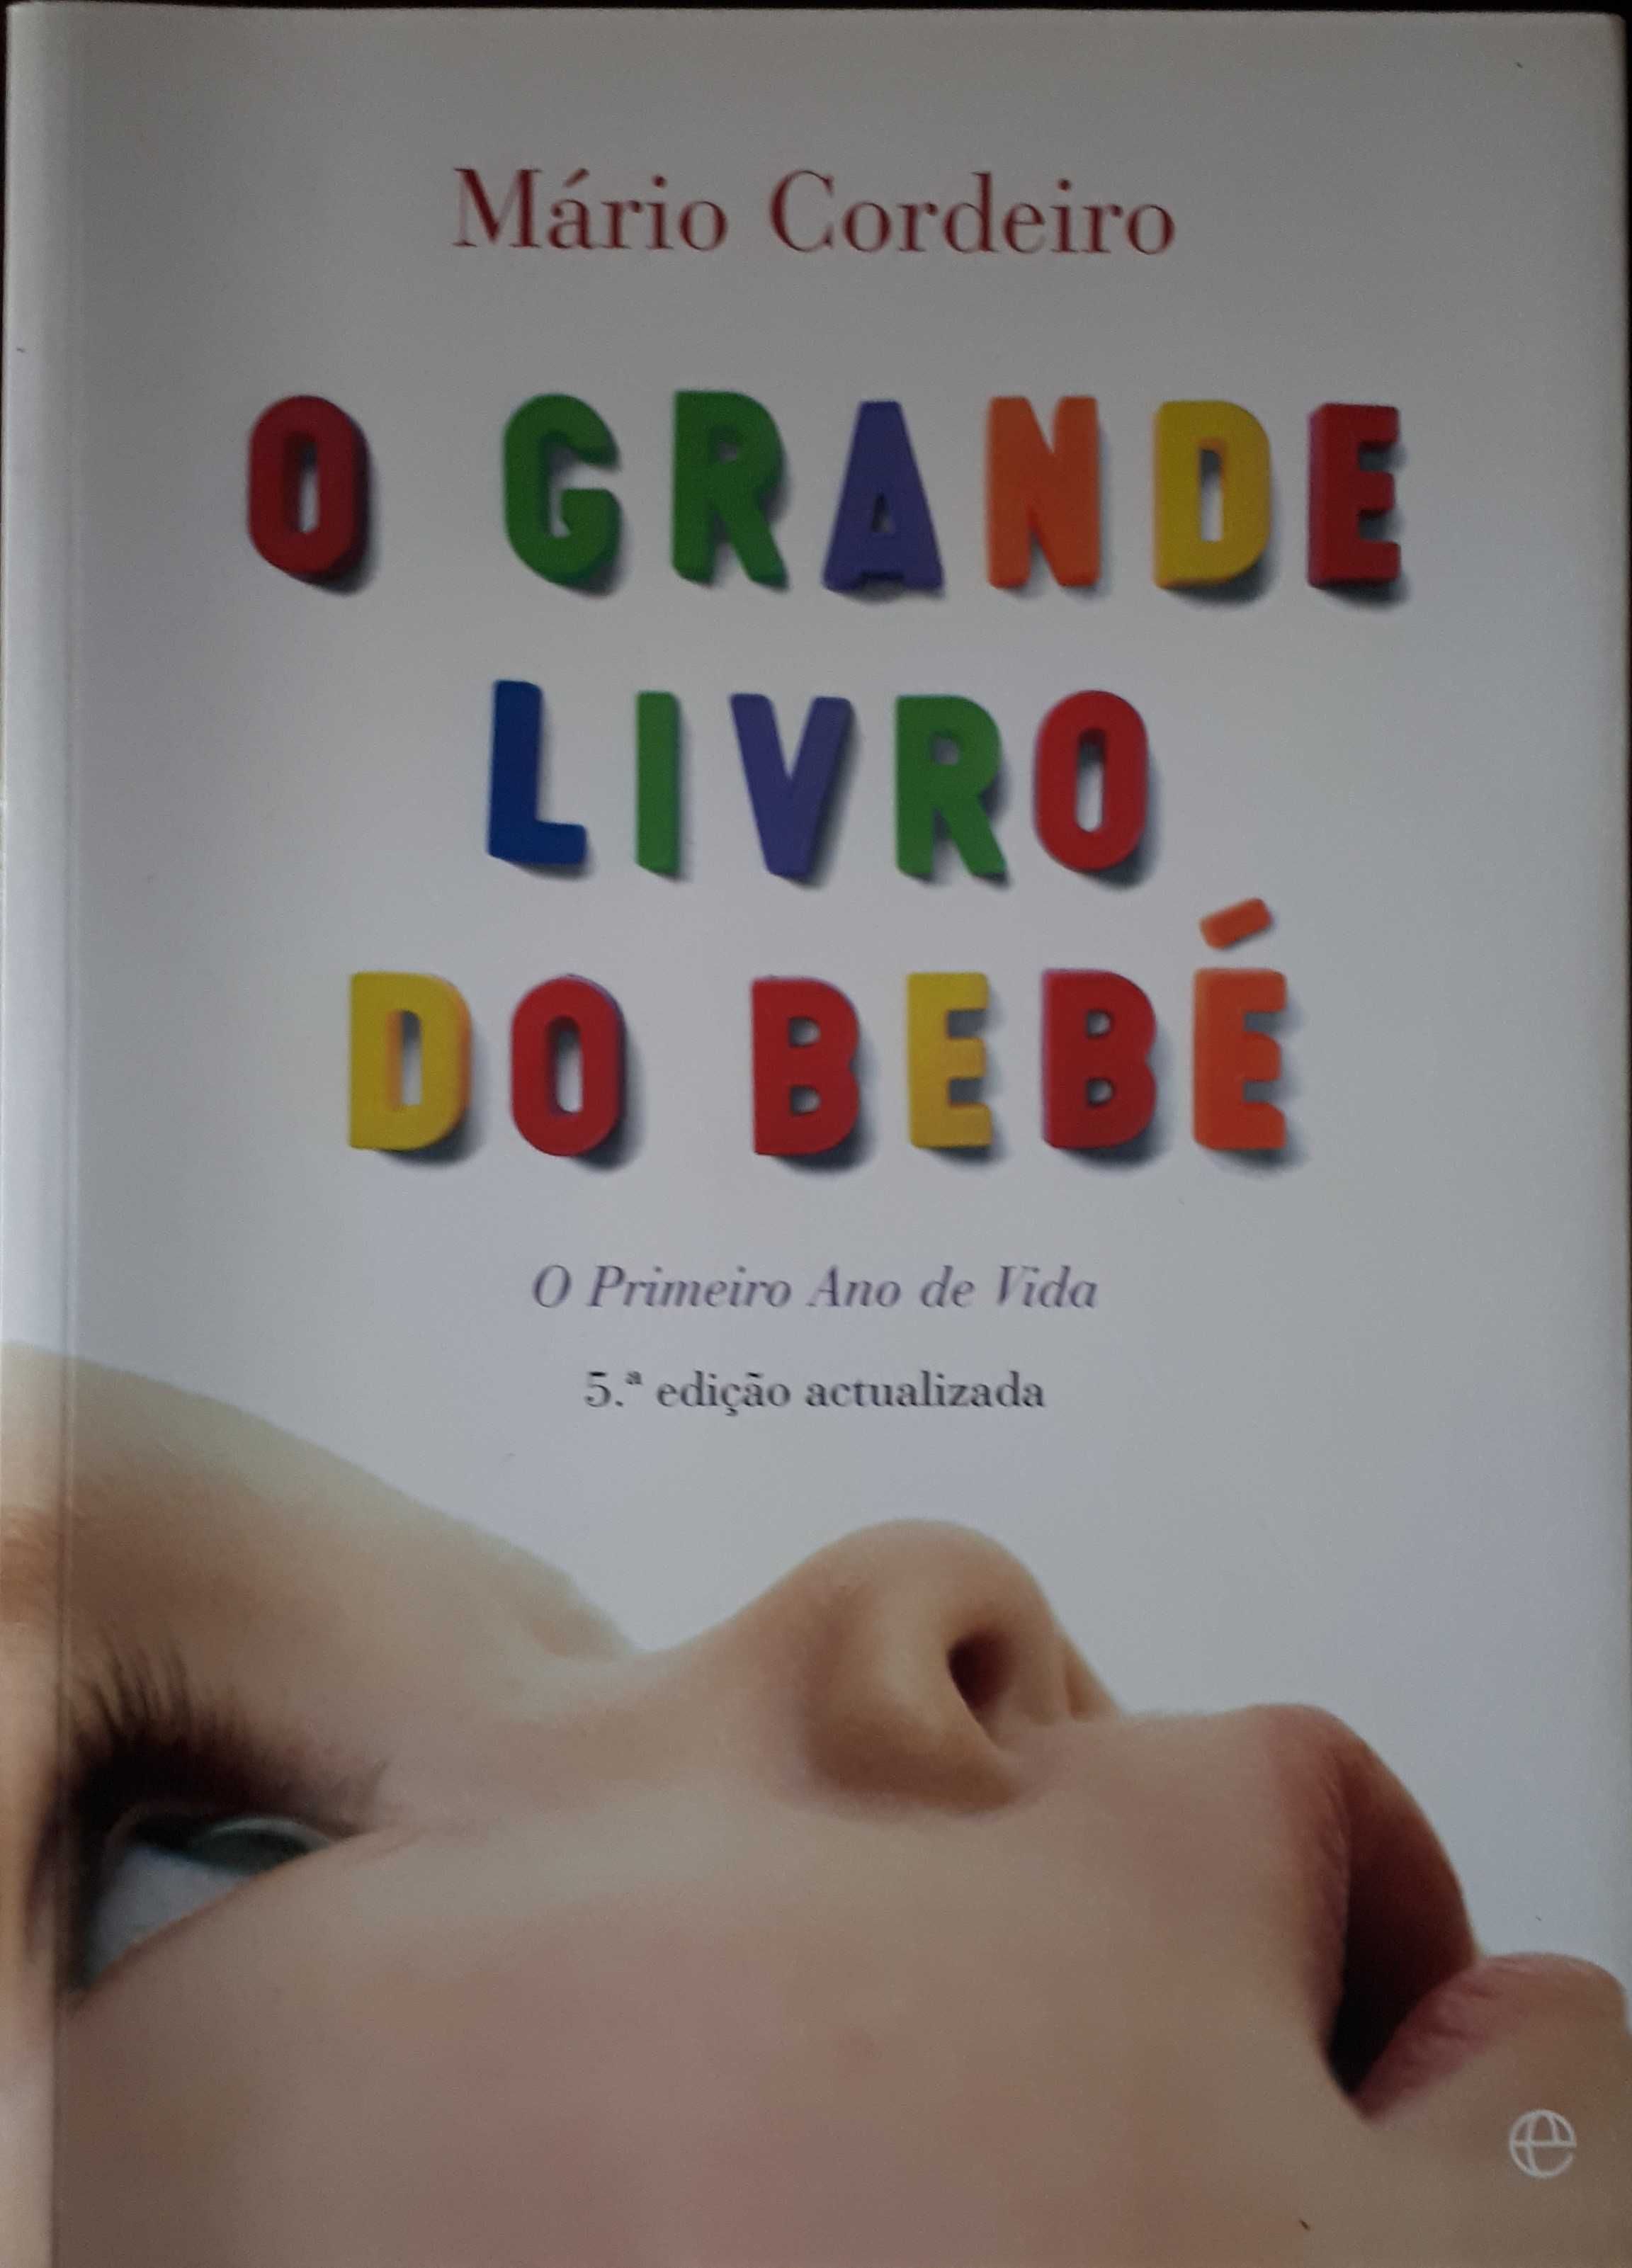 "O Grande Livro do Bébé" de Mário Cordeiro